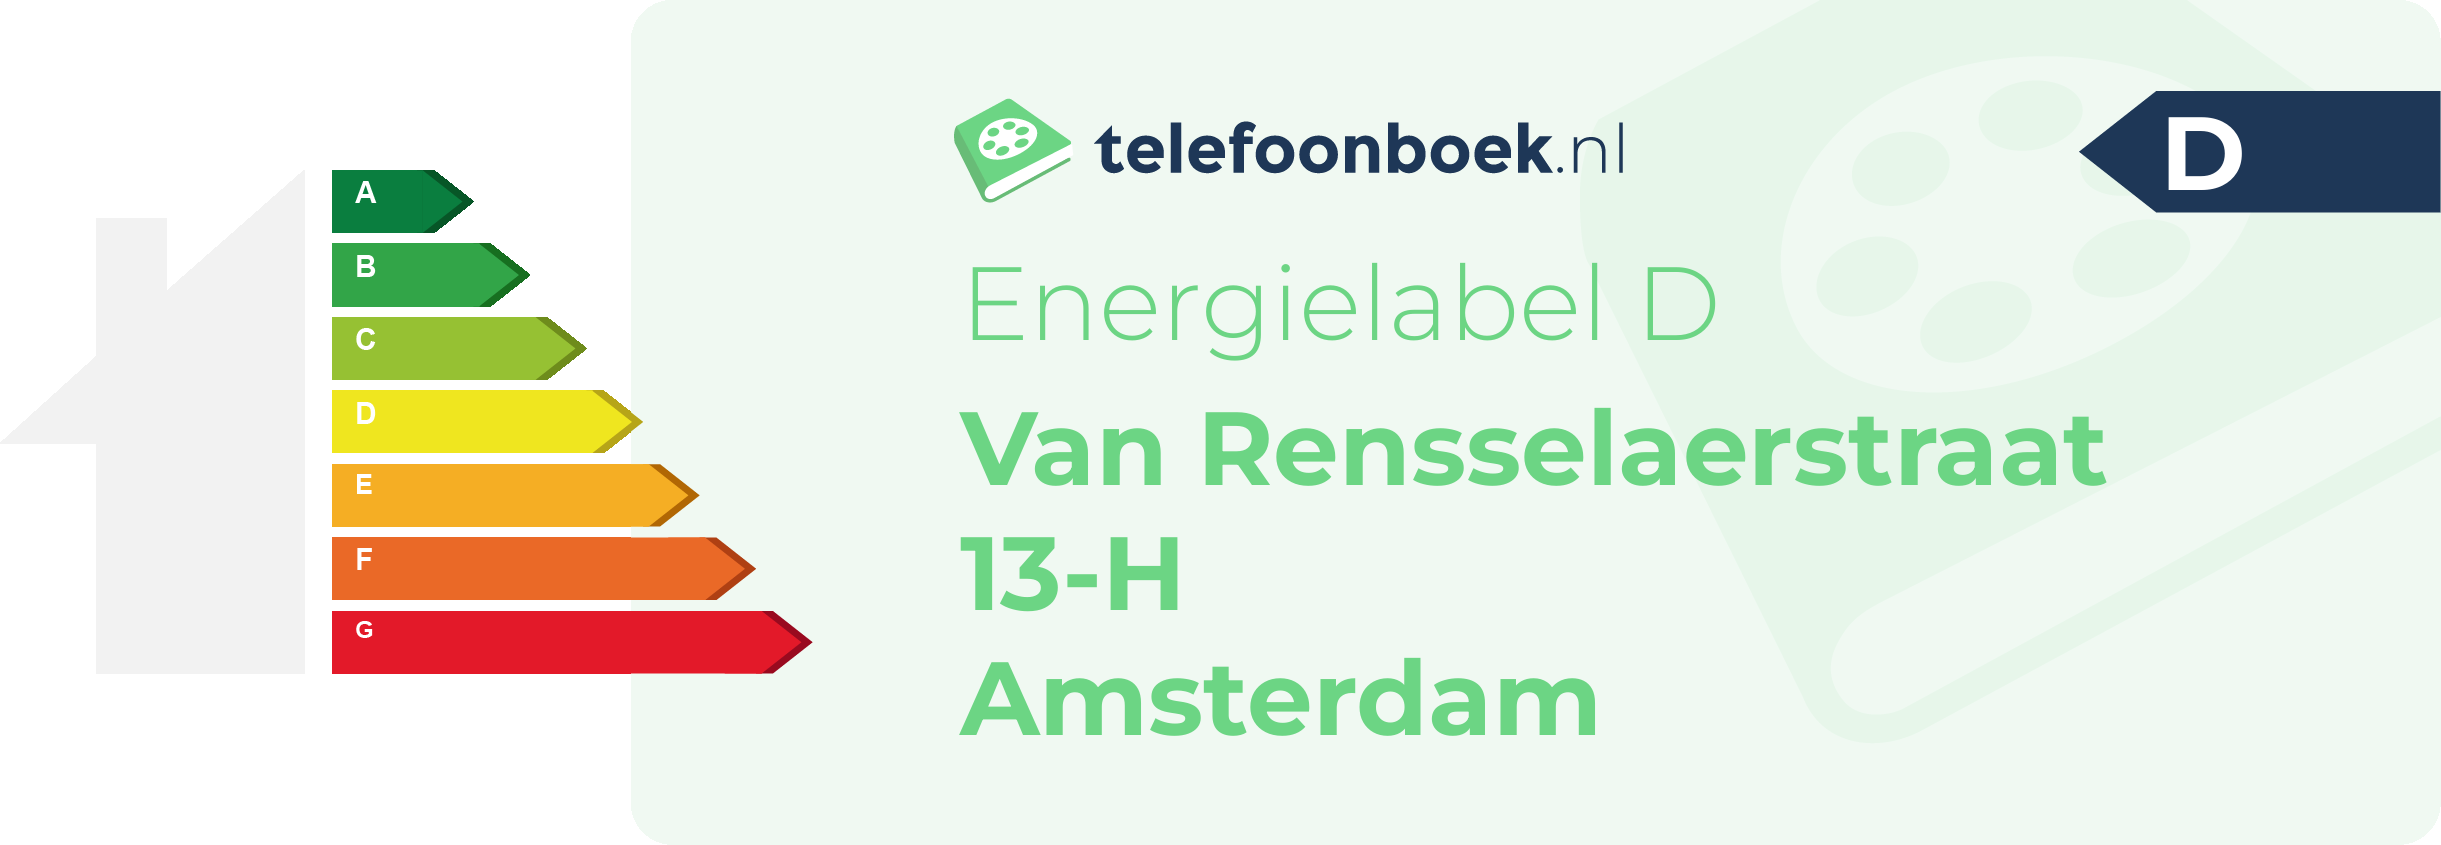 Energielabel Van Rensselaerstraat 13-H Amsterdam